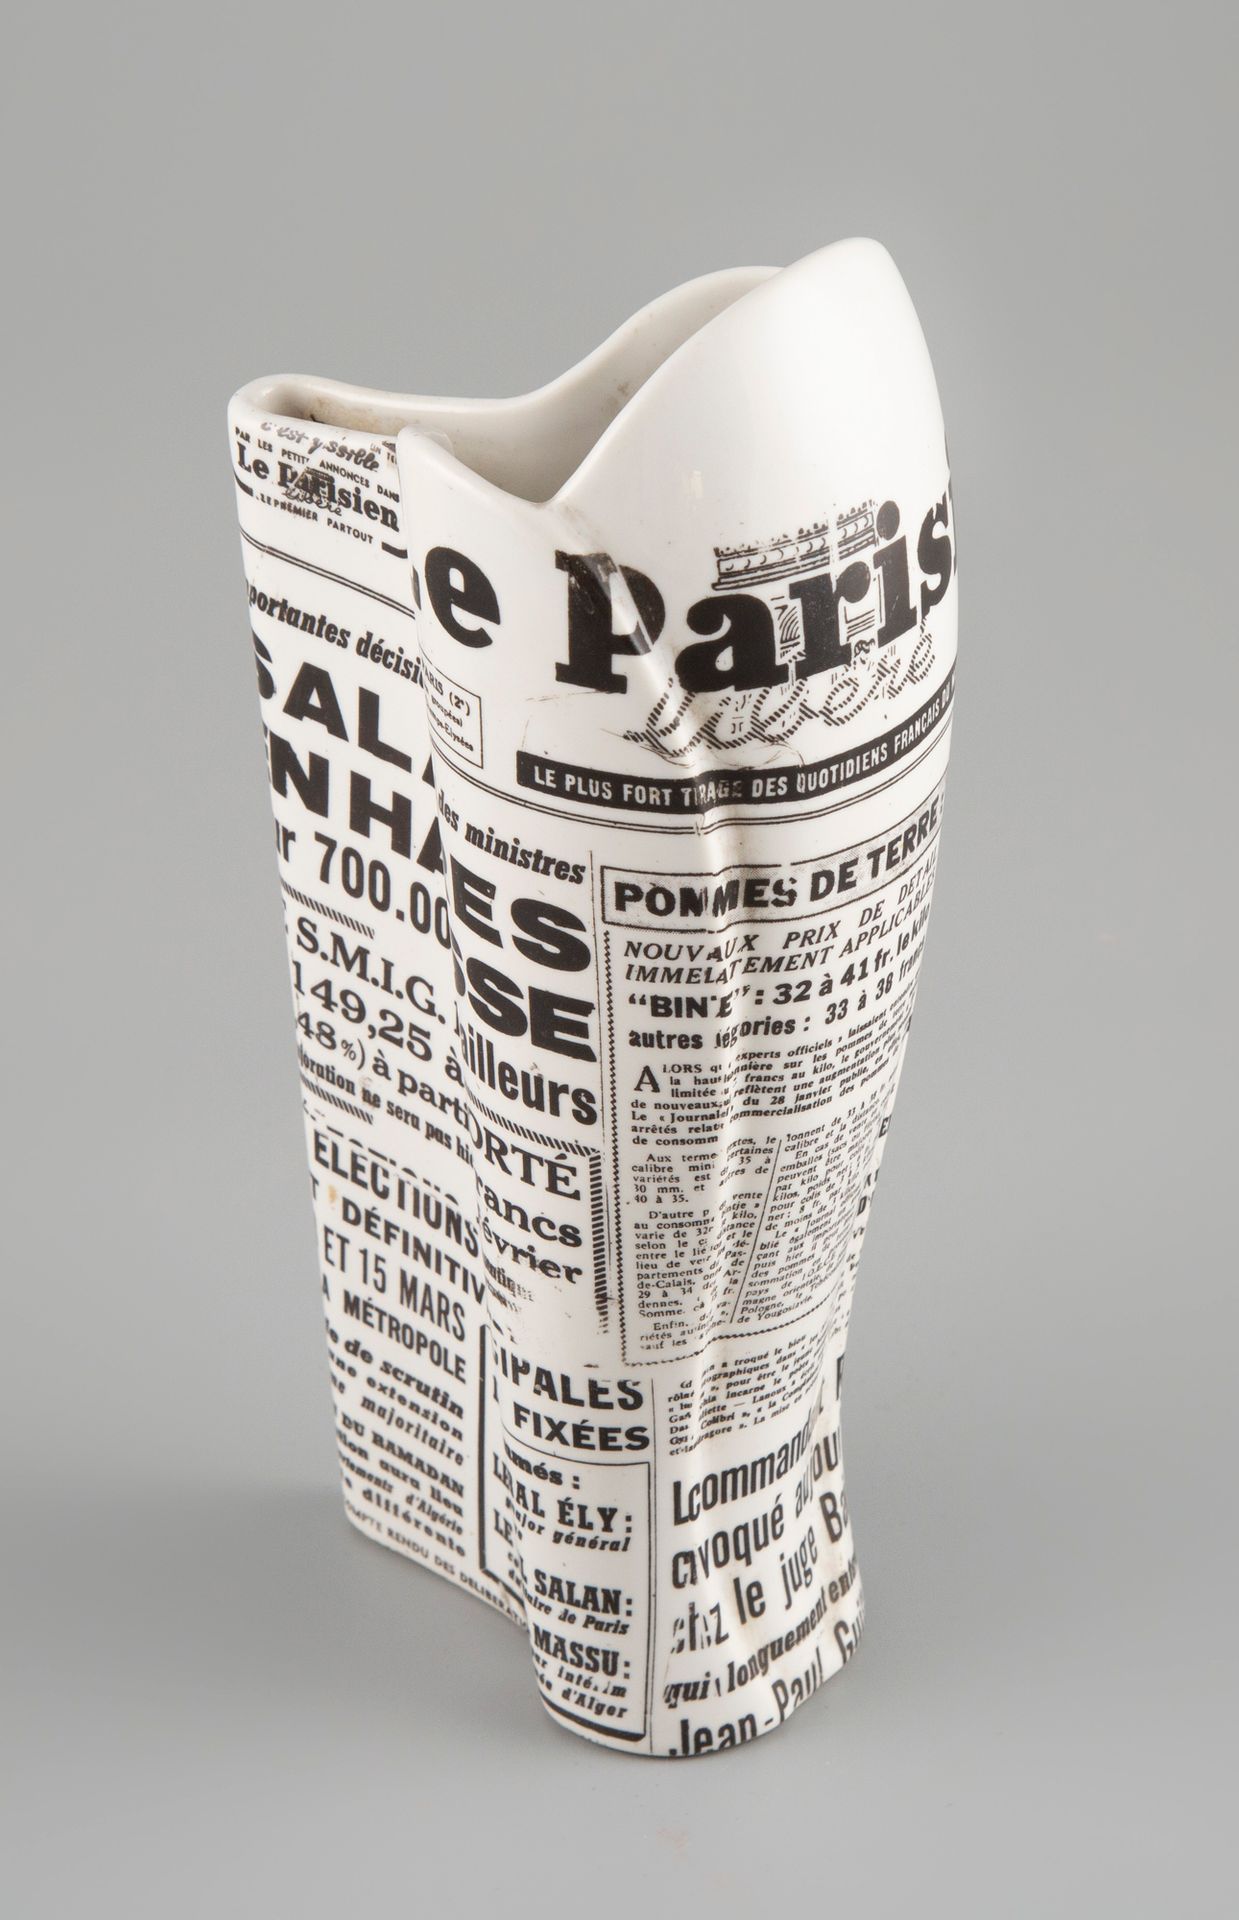 Null 由卷起的报纸形成的花瓶，"Le Parisien Libéré"，1960年代

印花瓷器

压印标记

26 x 8 x 11厘米。